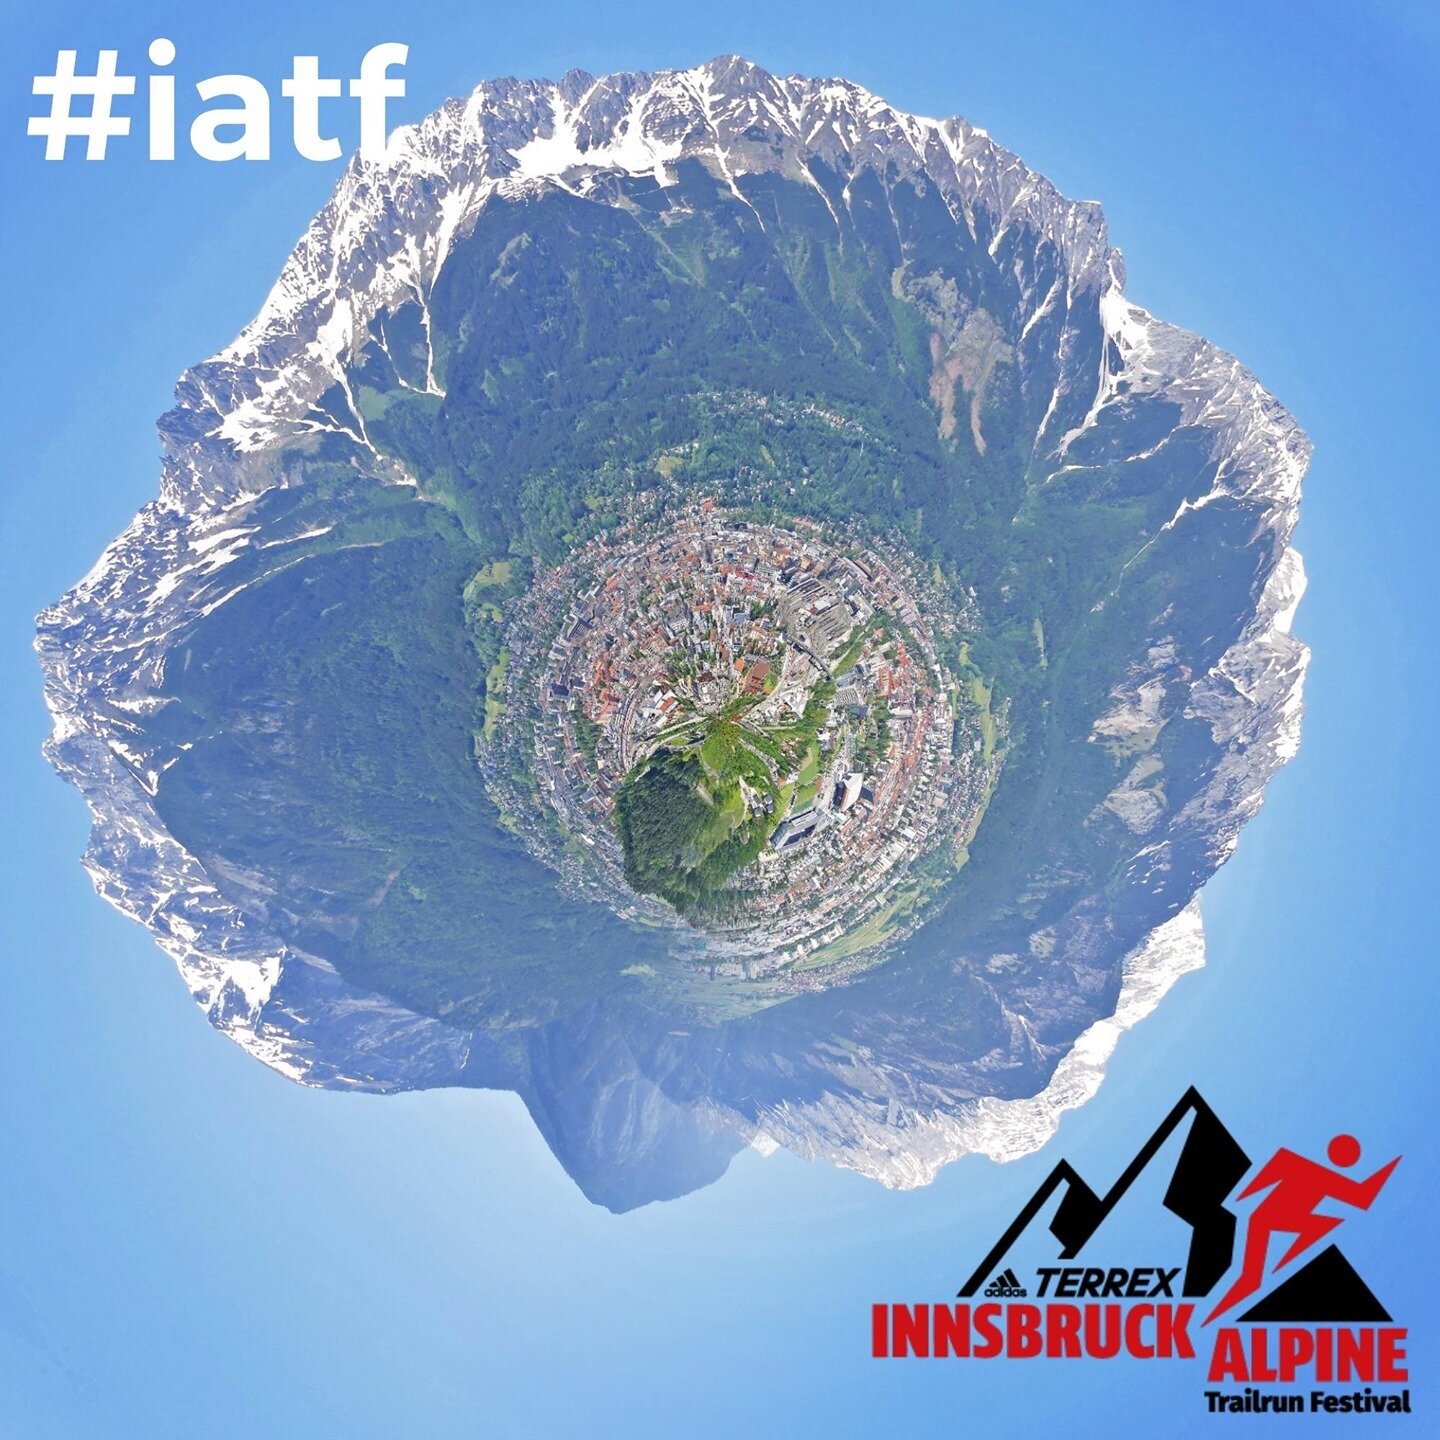 Bald startet der #iatf und wir w&uuml;nschen allen Teilnehmern einen fantastischen Lauf.
- Donnerstag, ab 20 Uhr, K7 Nighttrail
- Freitag, ab 23 Uhr, K110 Masters of Innsbruck und K85 Heart of the Alps
- Samstag, ab 8 Uhr, K42 Trailmarathon
- Samstag